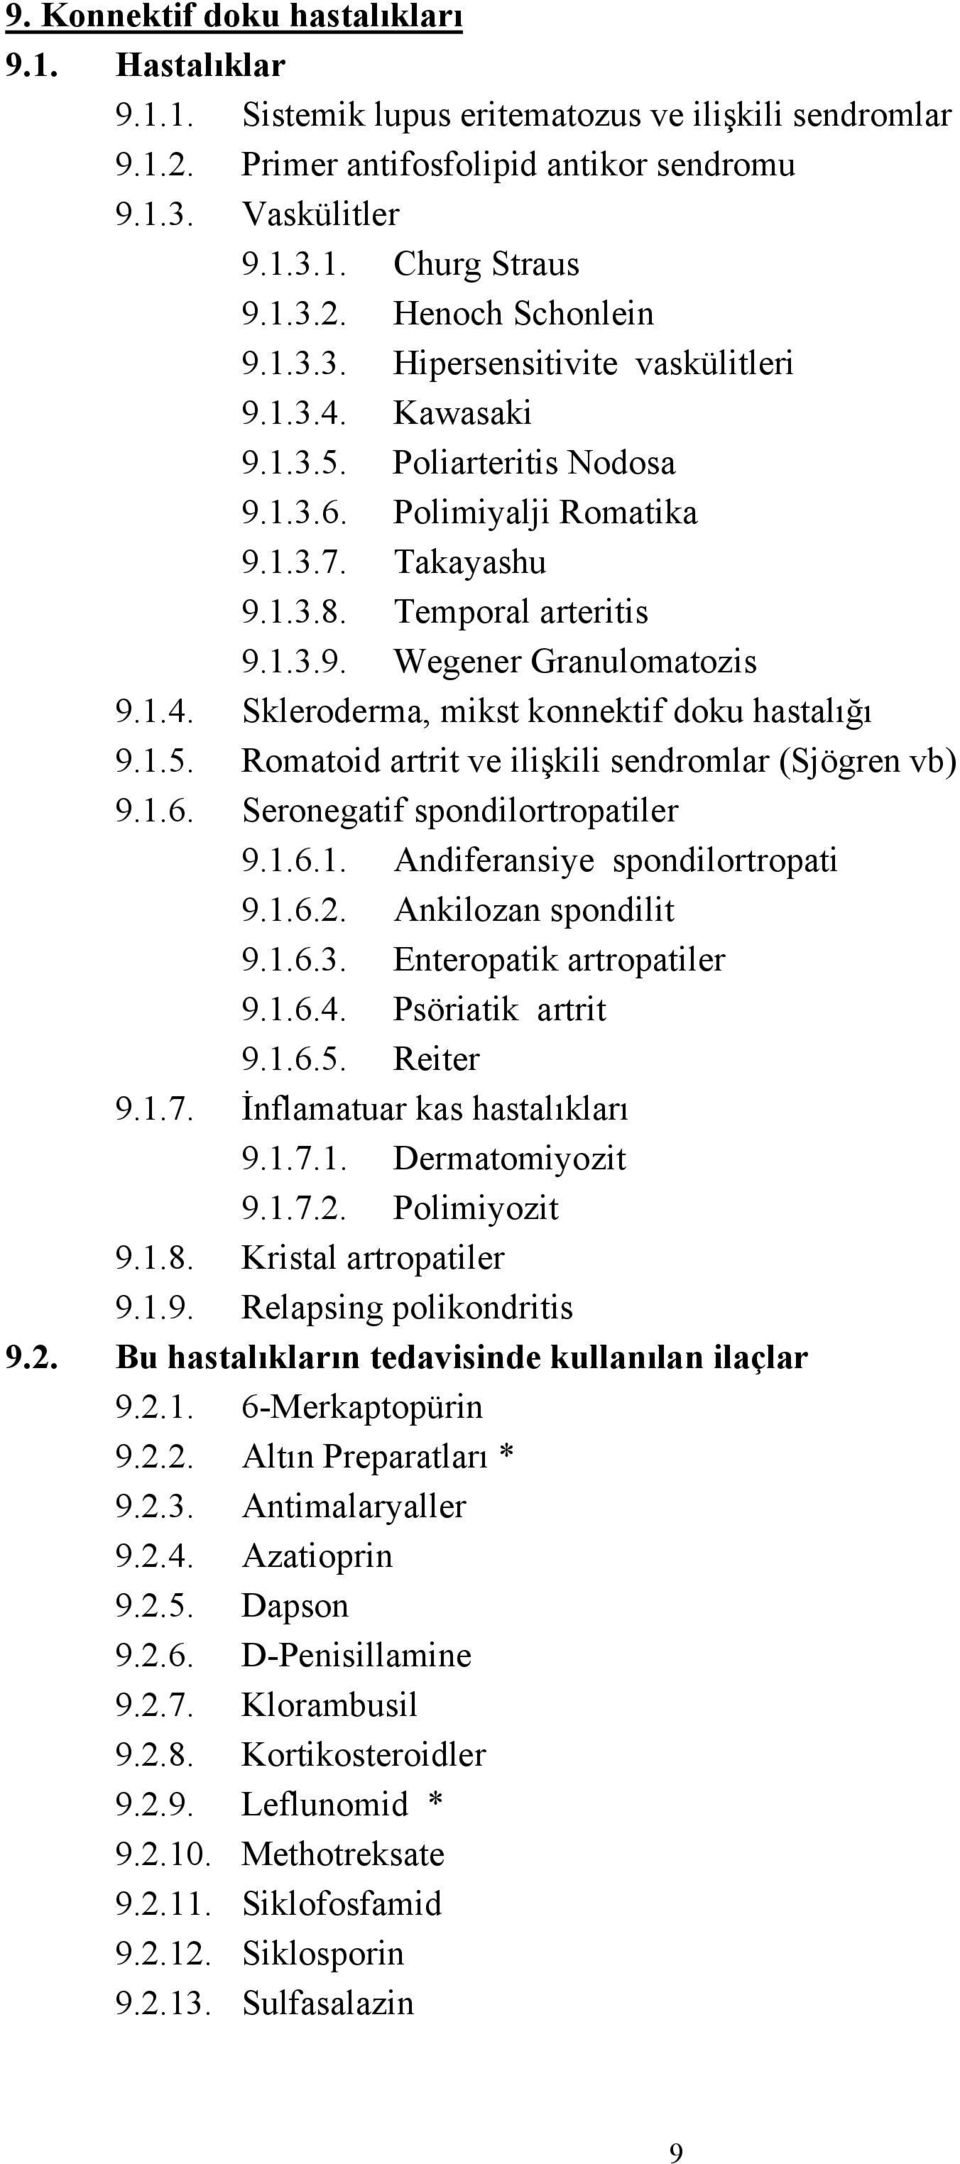 1.5. Romatoid artrit ve ilişkili sendromlar (Sjögren vb) 9.1.6. Seronegatif spondilortropatiler 9.1.6.1. Andiferansiye spondilortropati 9.1.6.2. Ankilozan spondilit 9.1.6.3.